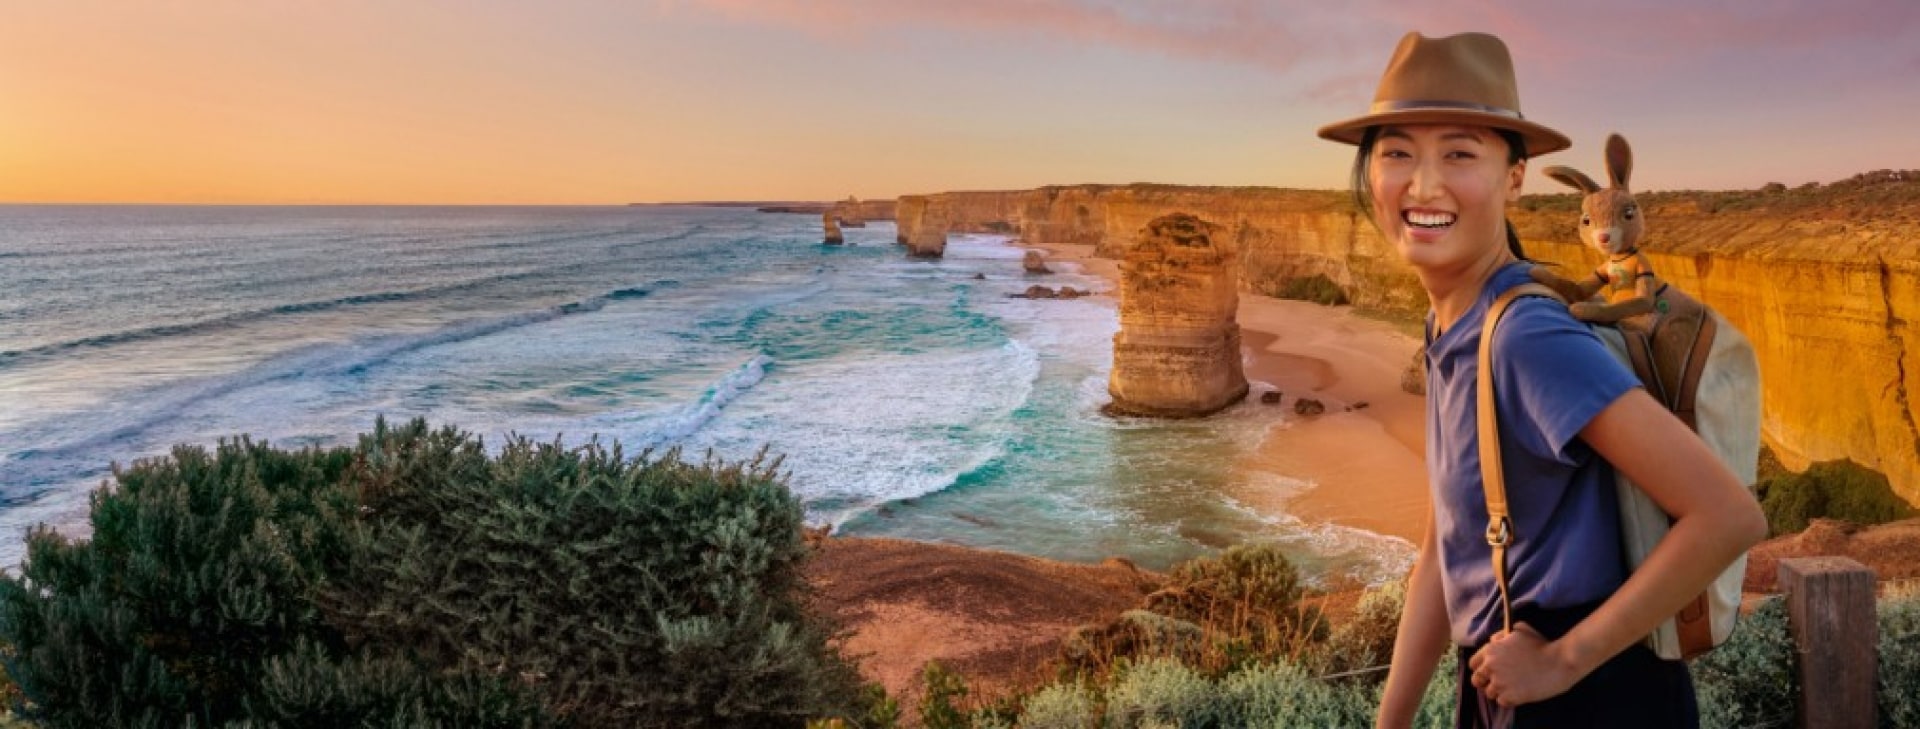 Twelve Apostles, Great Ocean Road, Victoria © Tourism Australia